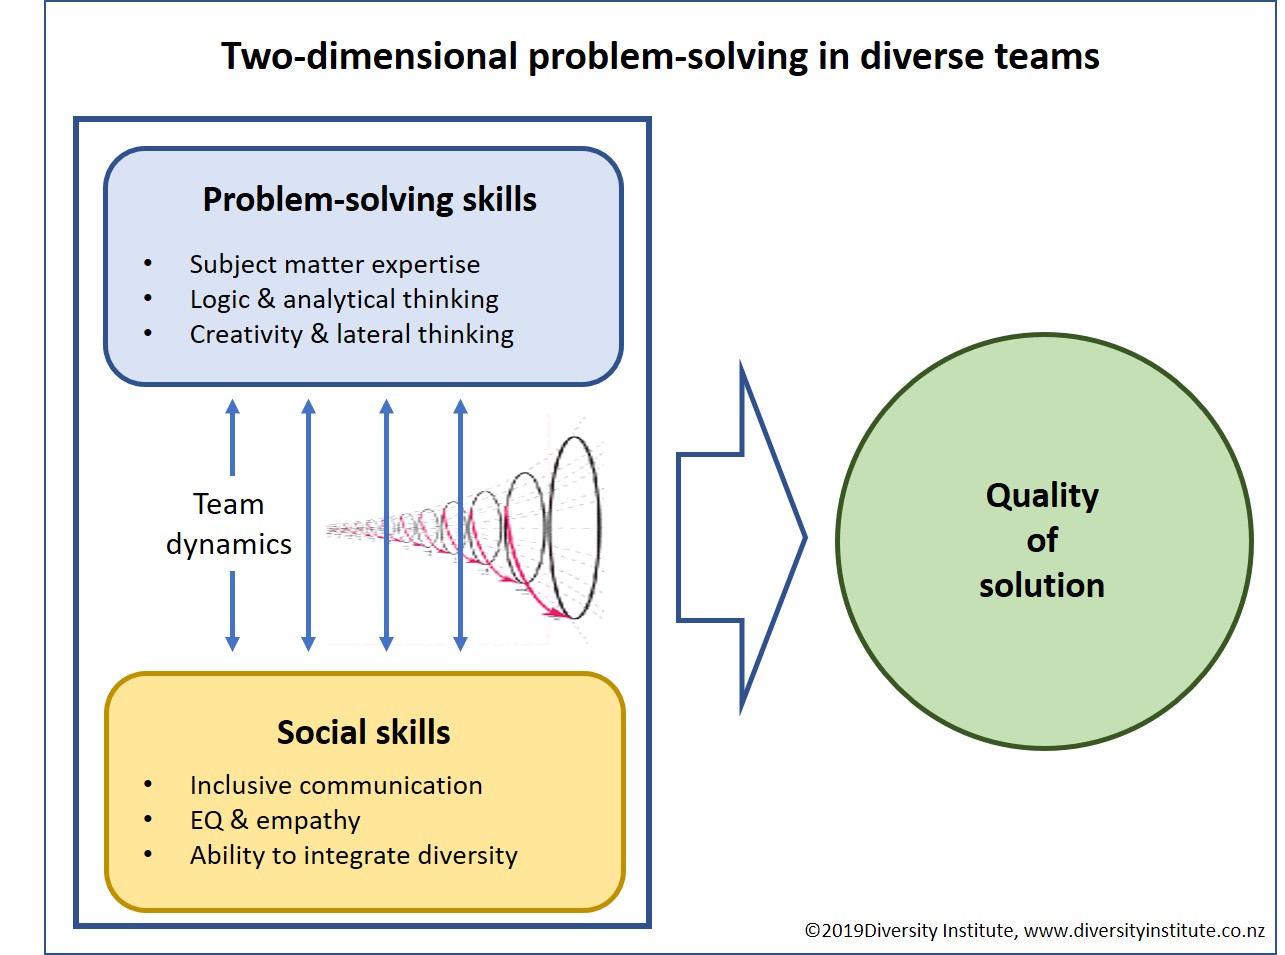 problem solving teams benefits